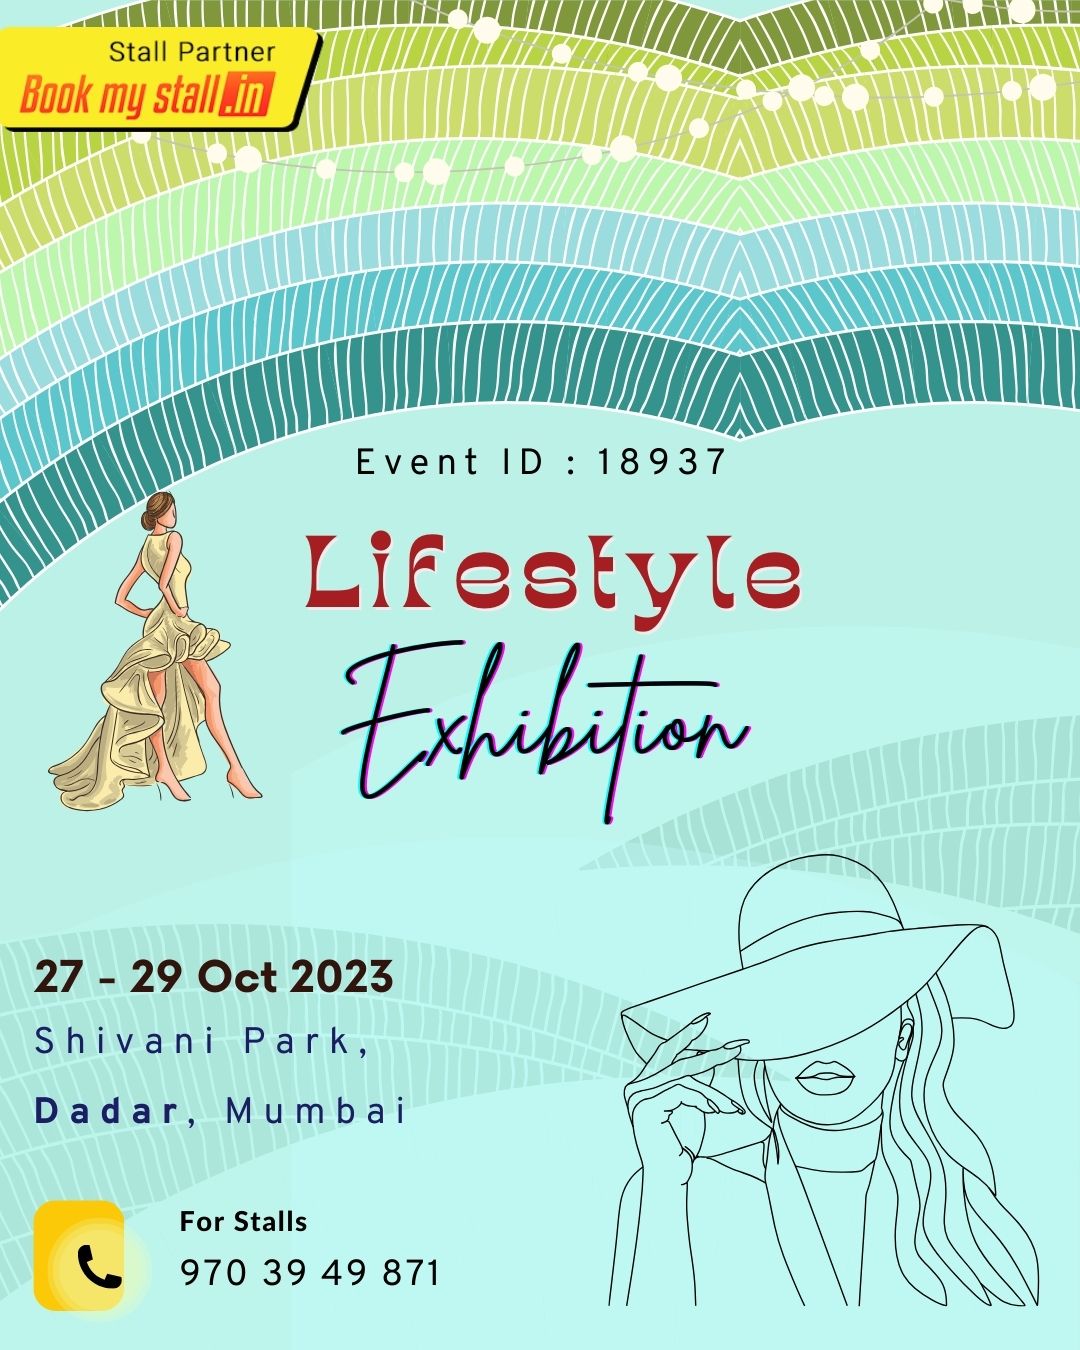 Lifestyle Exhibition - Mumbai